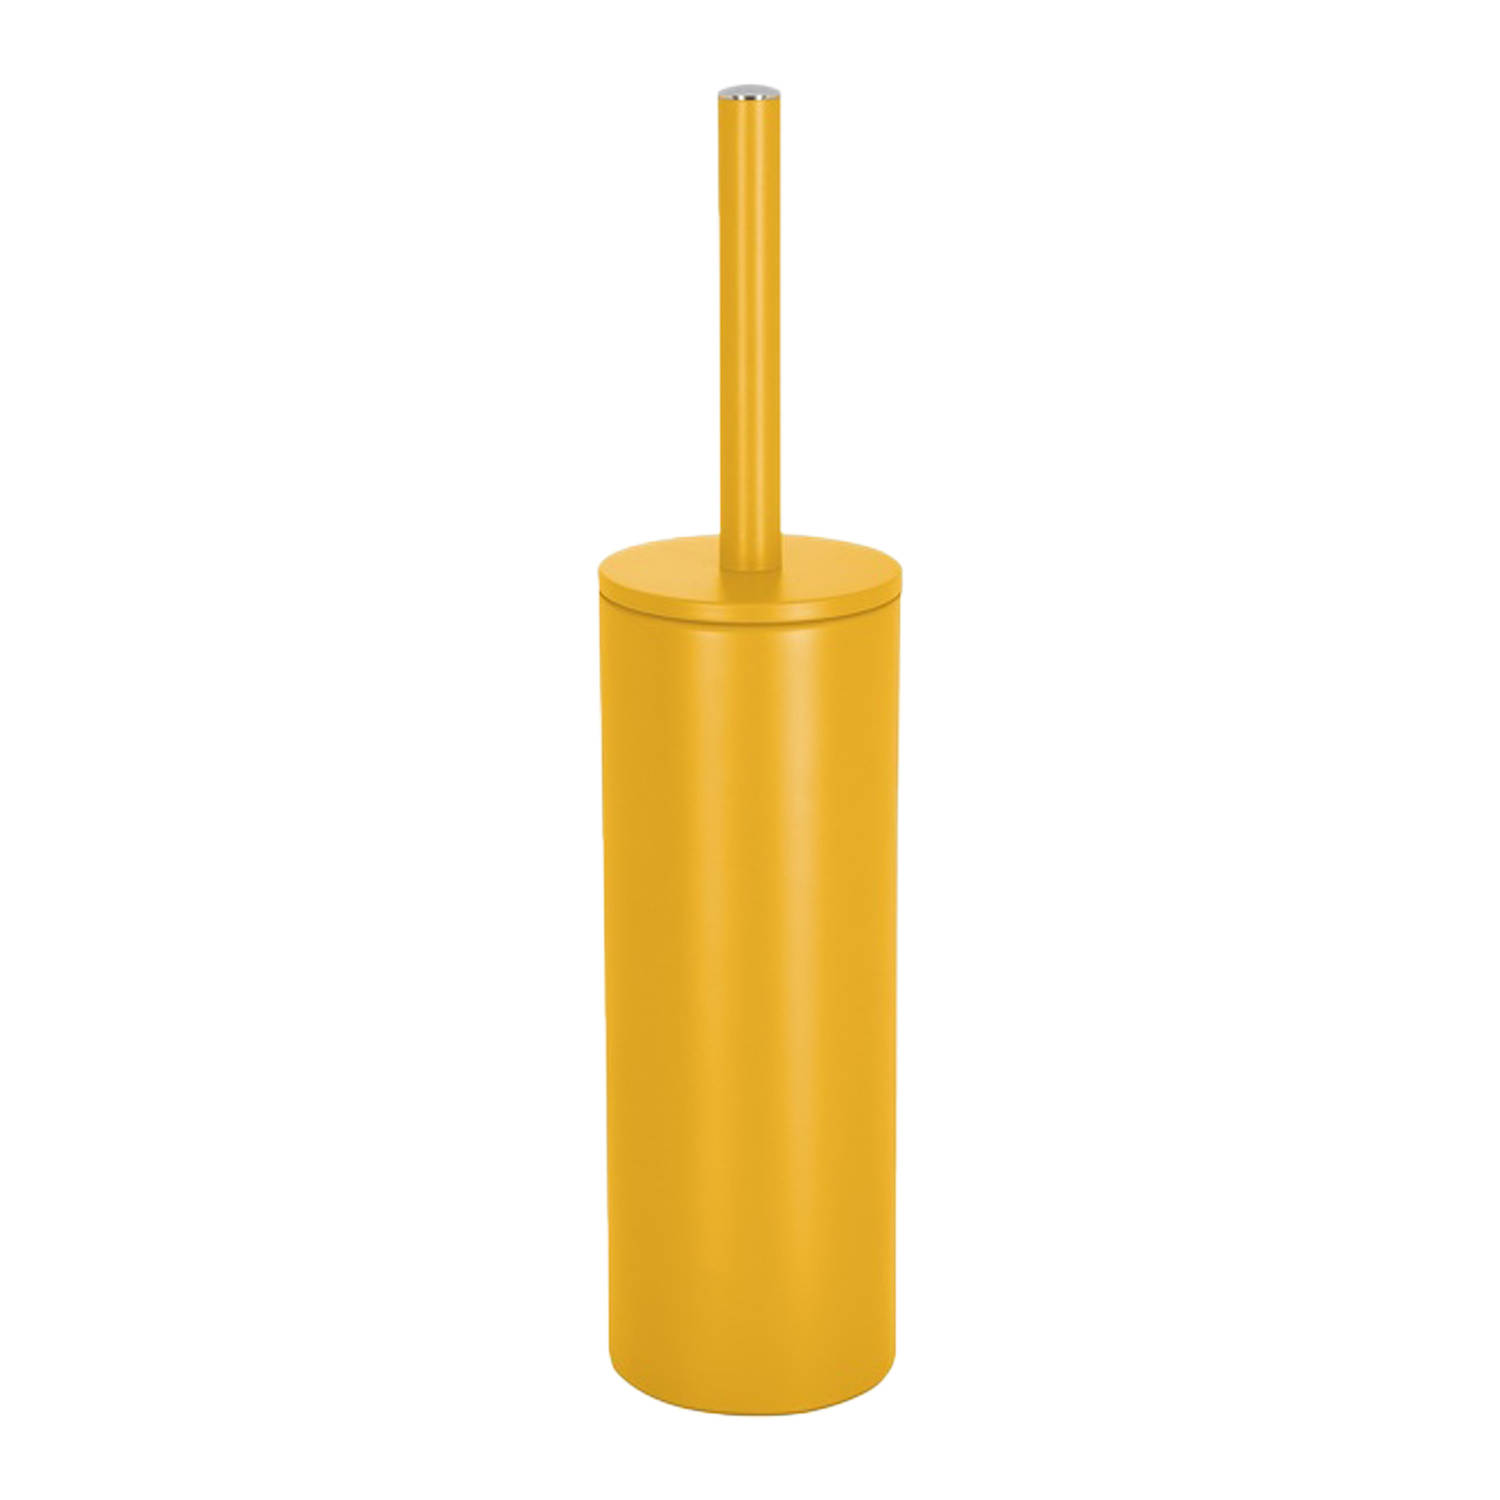 Spirella Luxe Toiletborstel in houder Cannes - saffraan geel - metaal - 40 x 9 cm - met binnenbak